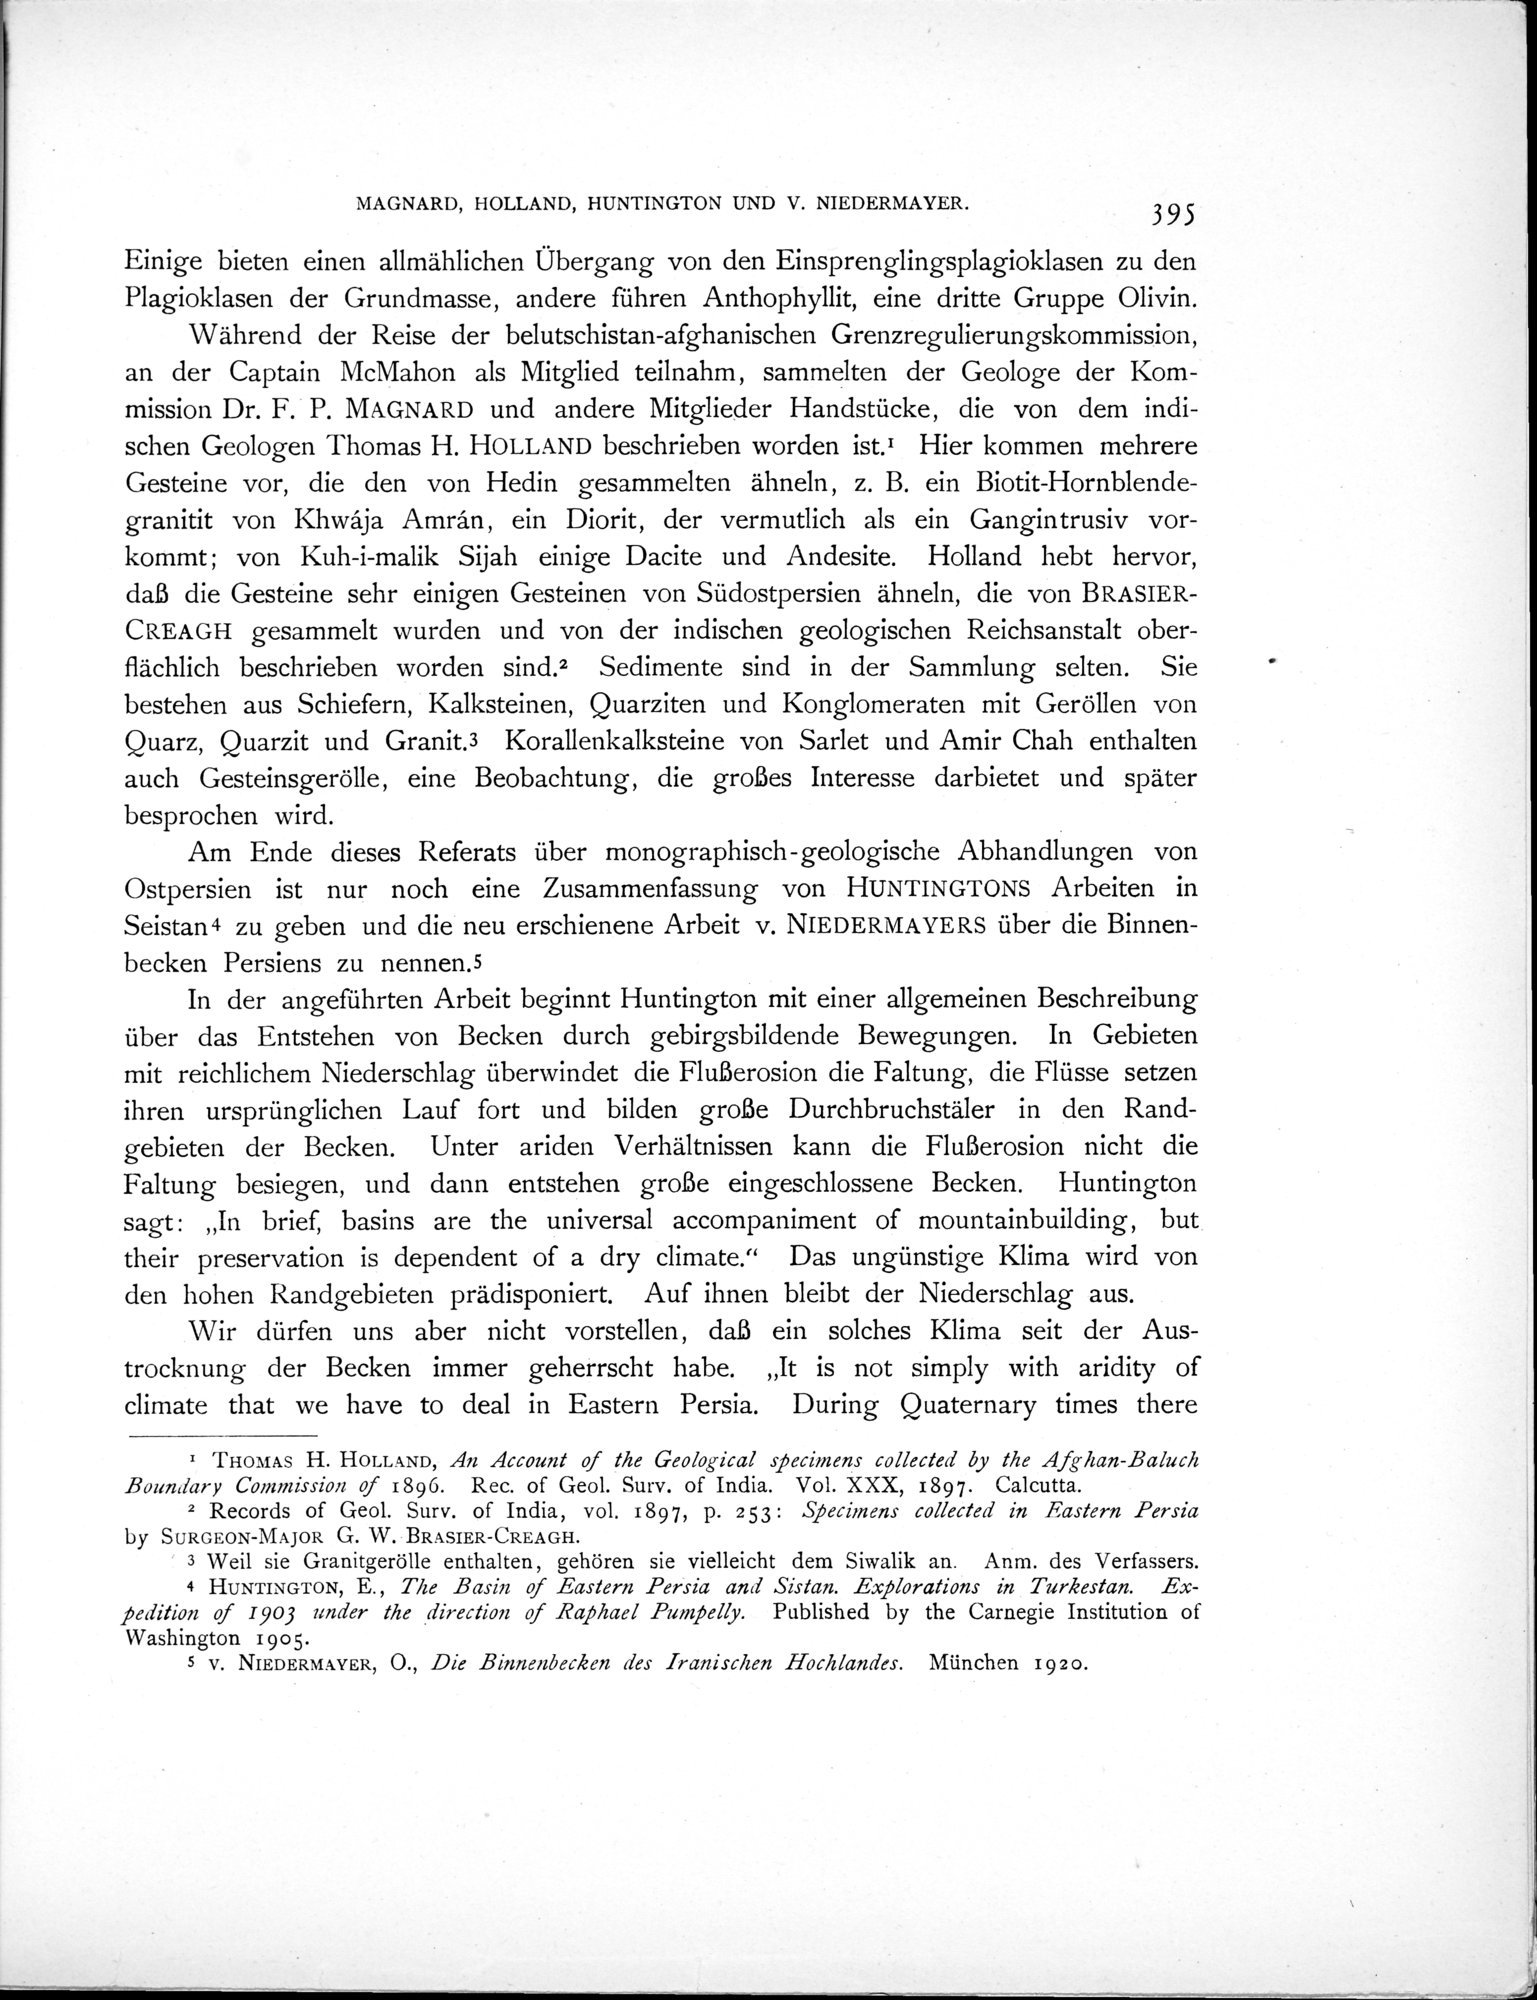 Eine Routenaufnahme durch Ostpersien : vol.2 / Page 465 (Grayscale High Resolution Image)